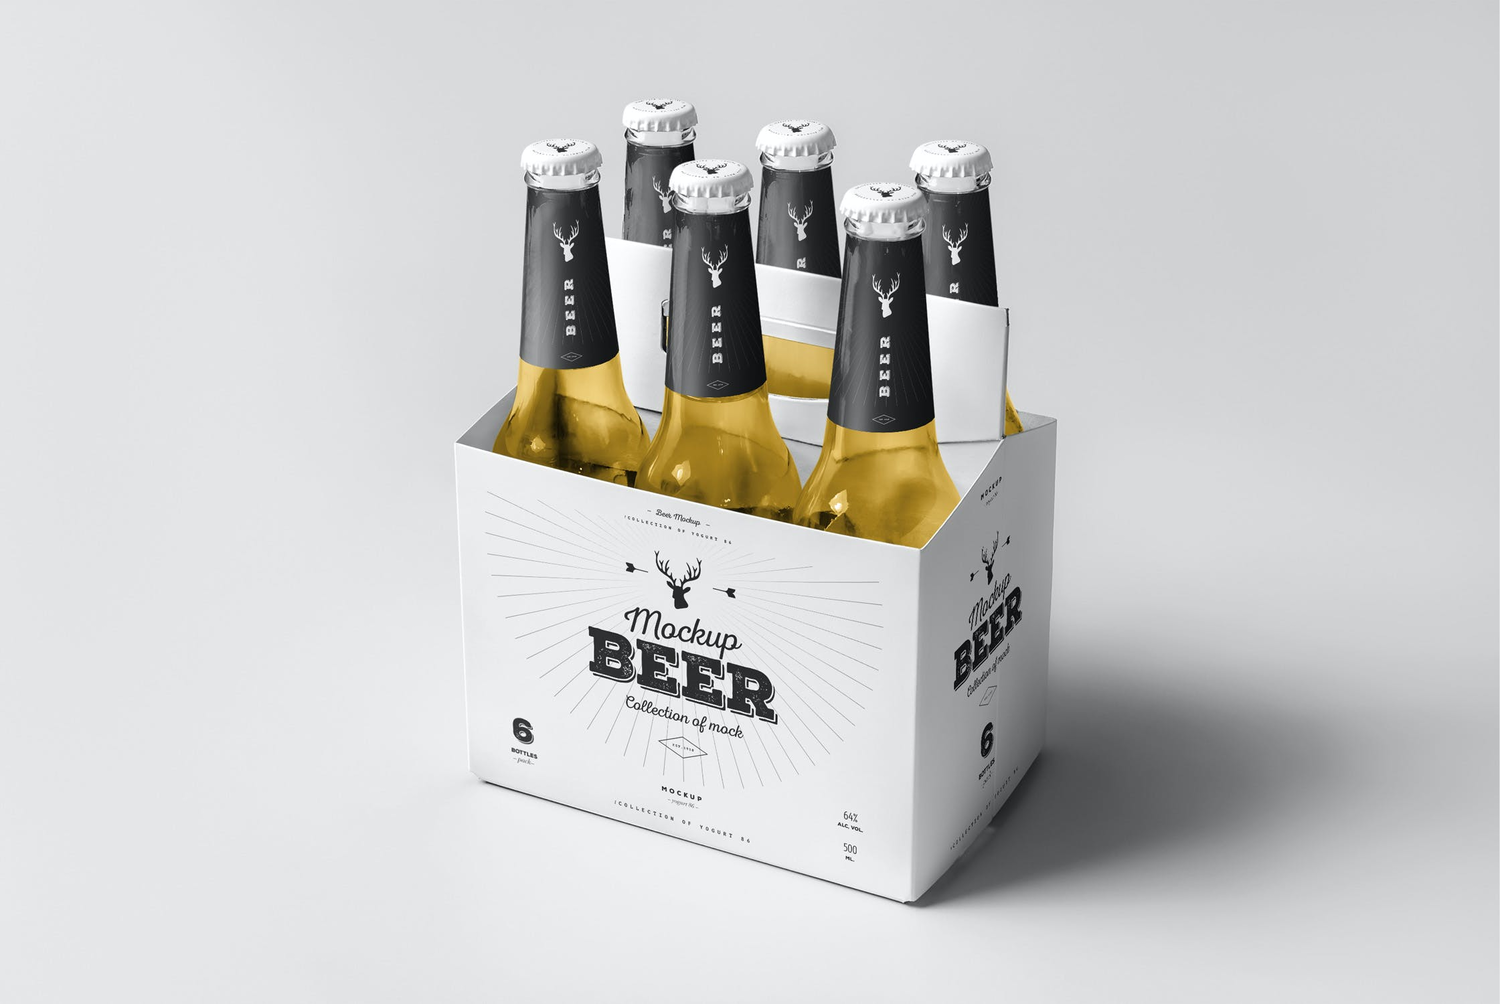 4706 8款啤酒酒标组合包装多角度设计作品空白贴图ps样机素材设计模板 Beer Mock-up 5@GOOODME.COM